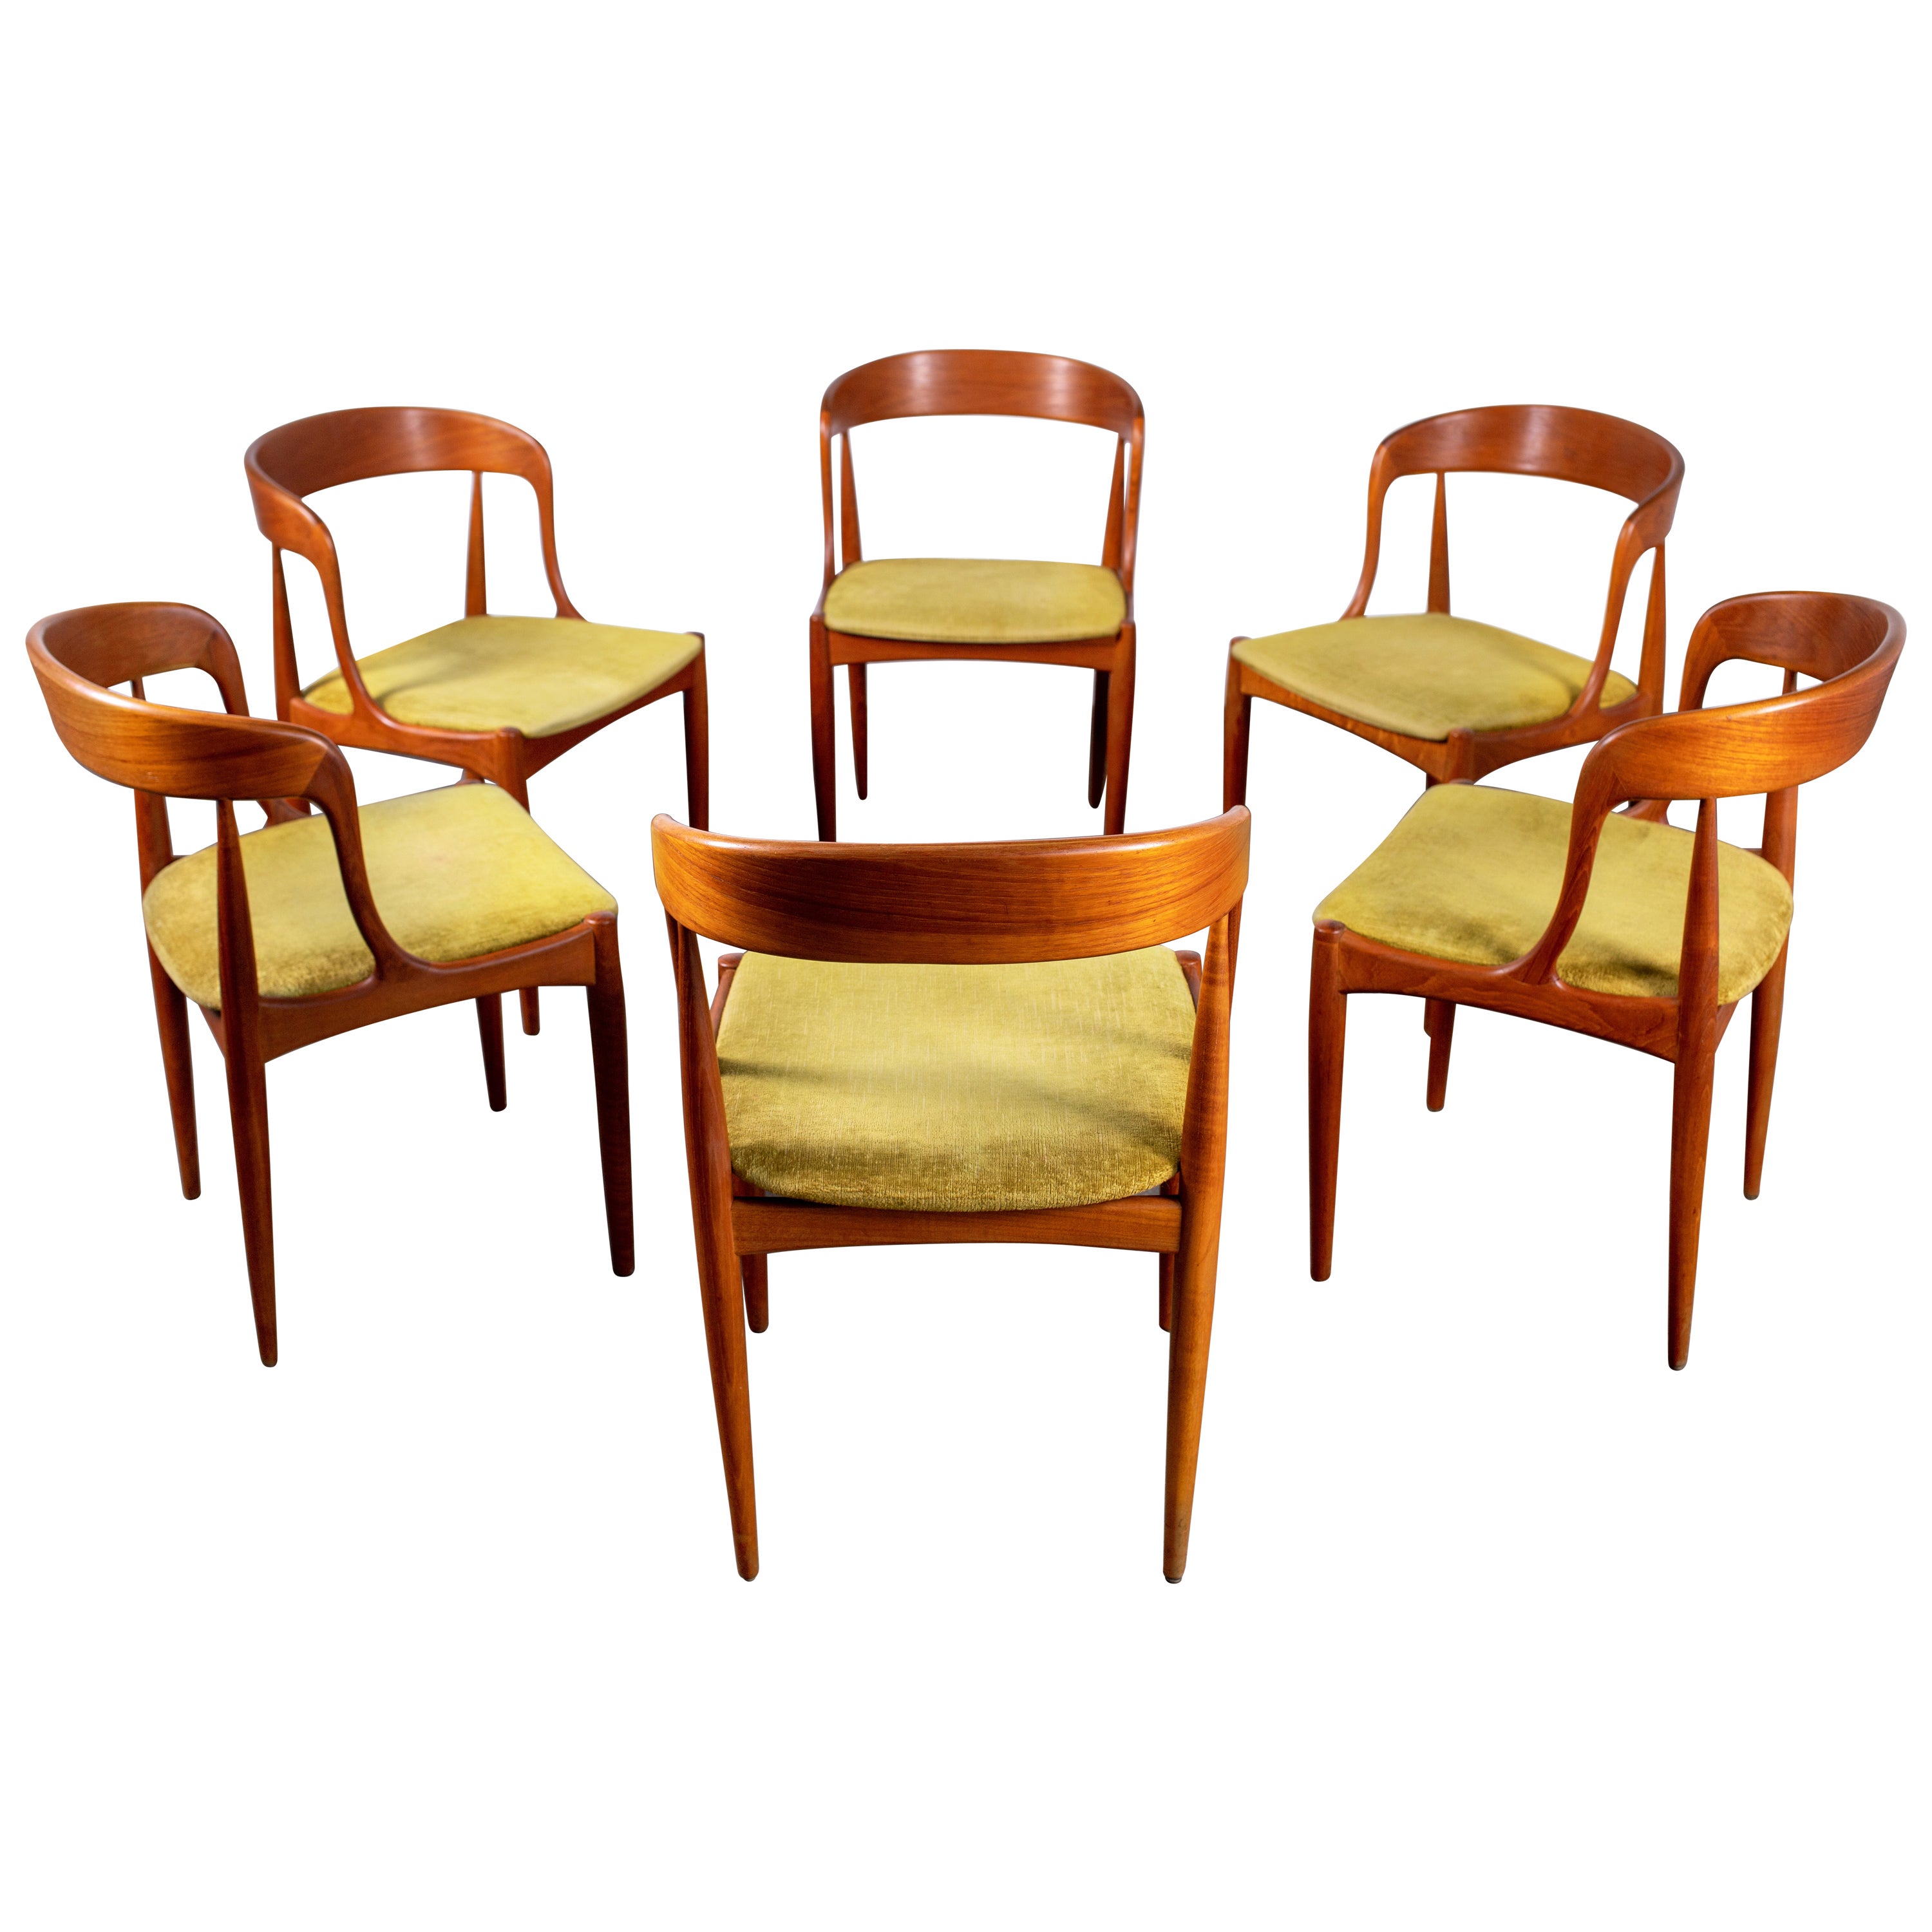 1960s Teak Johannes Andersen Dining Chairs for Uldum Denmark, Set of 6